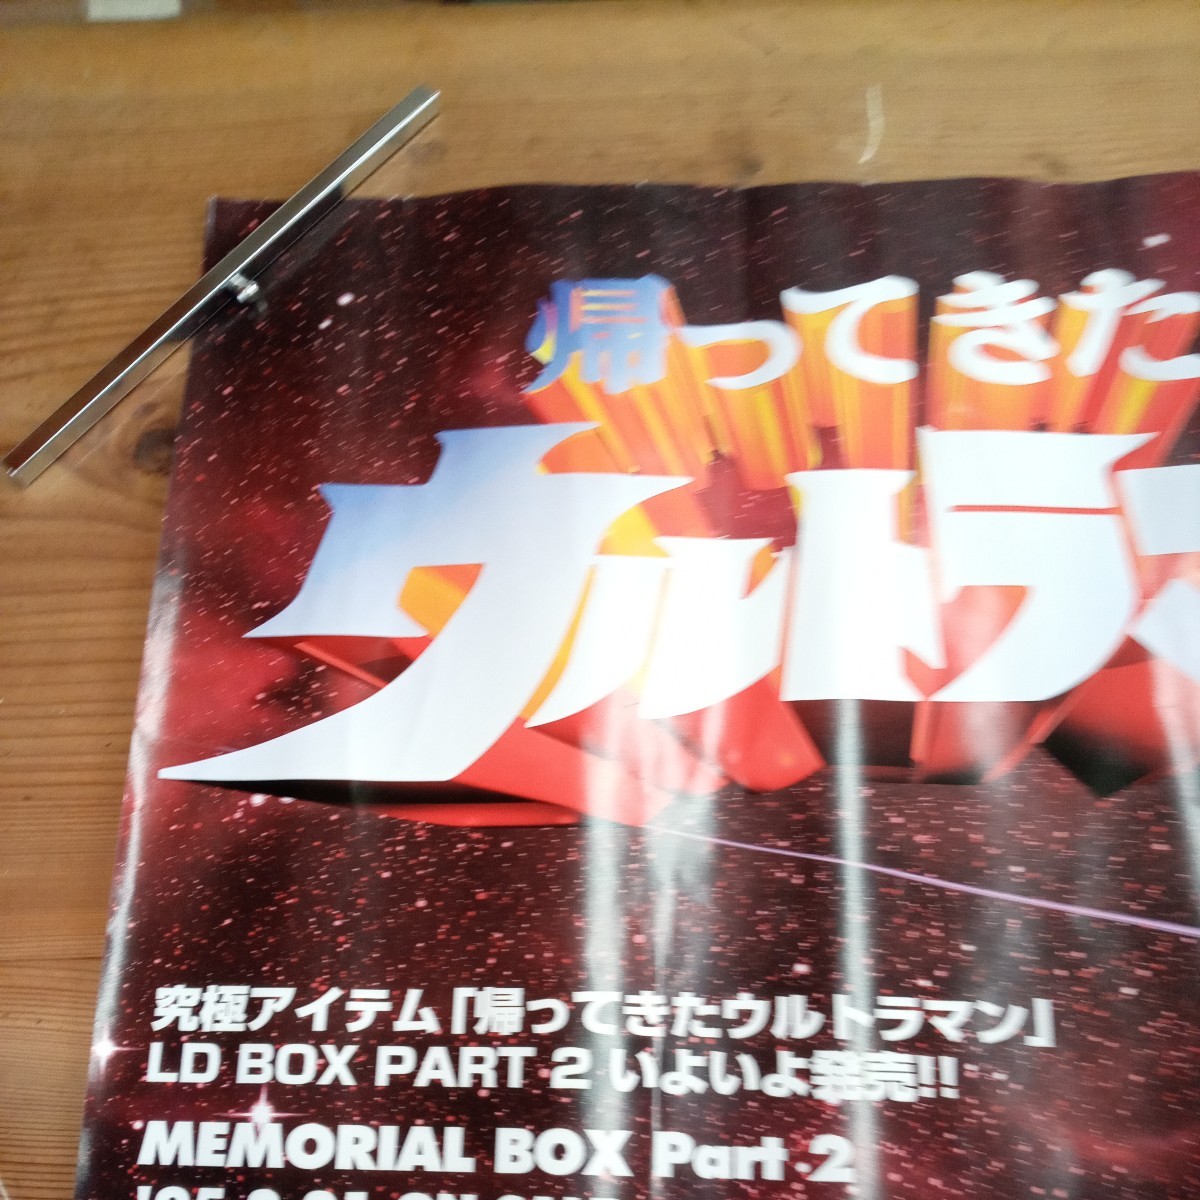  Return of Ultraman реклама постер не продается новый товар ③